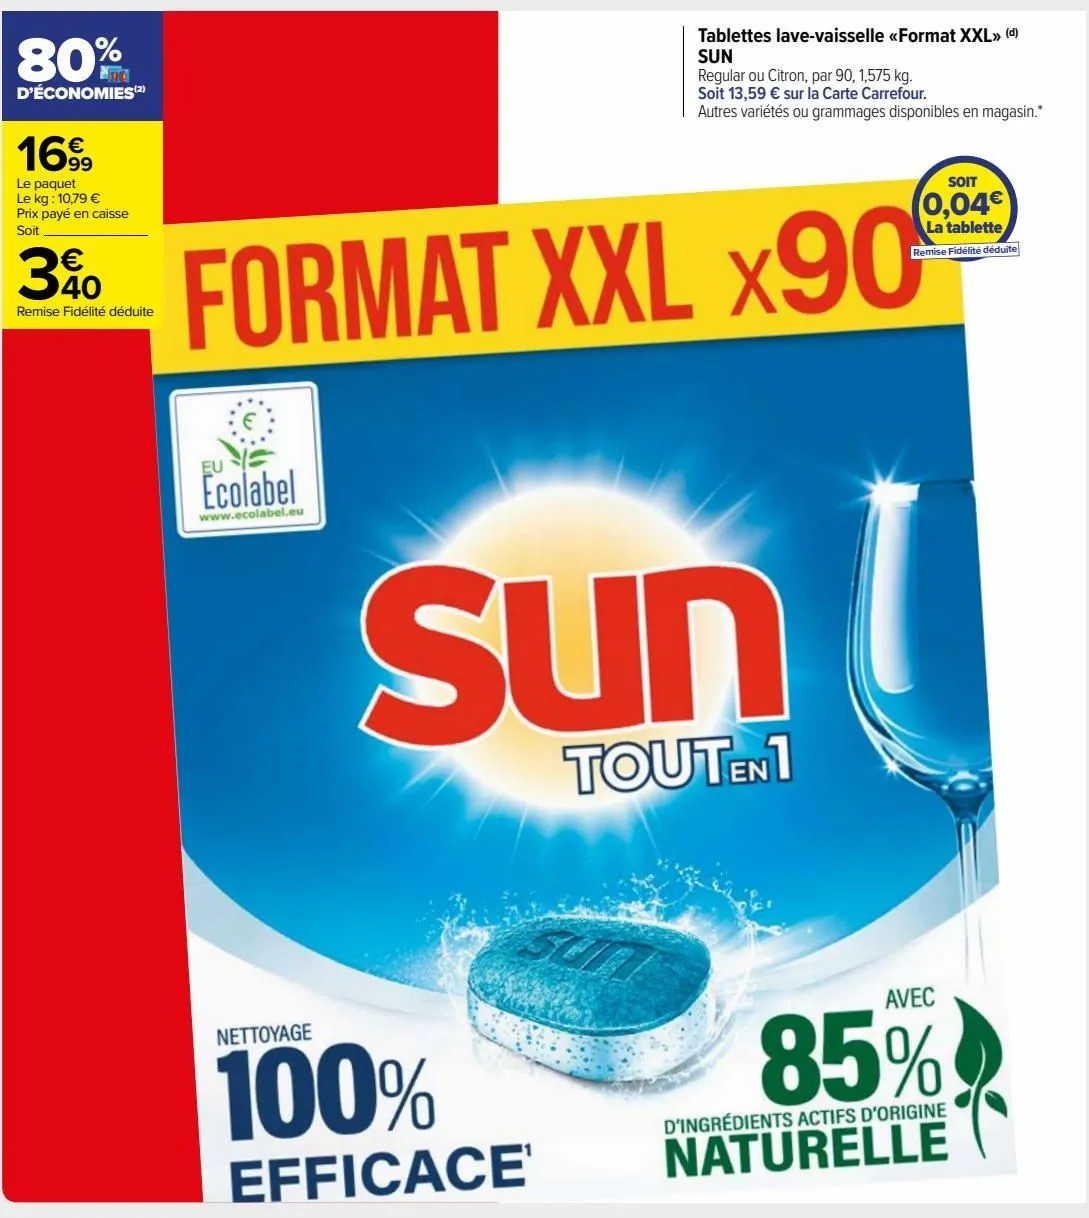 tablettes lave-vaisselle «format xxl» sun